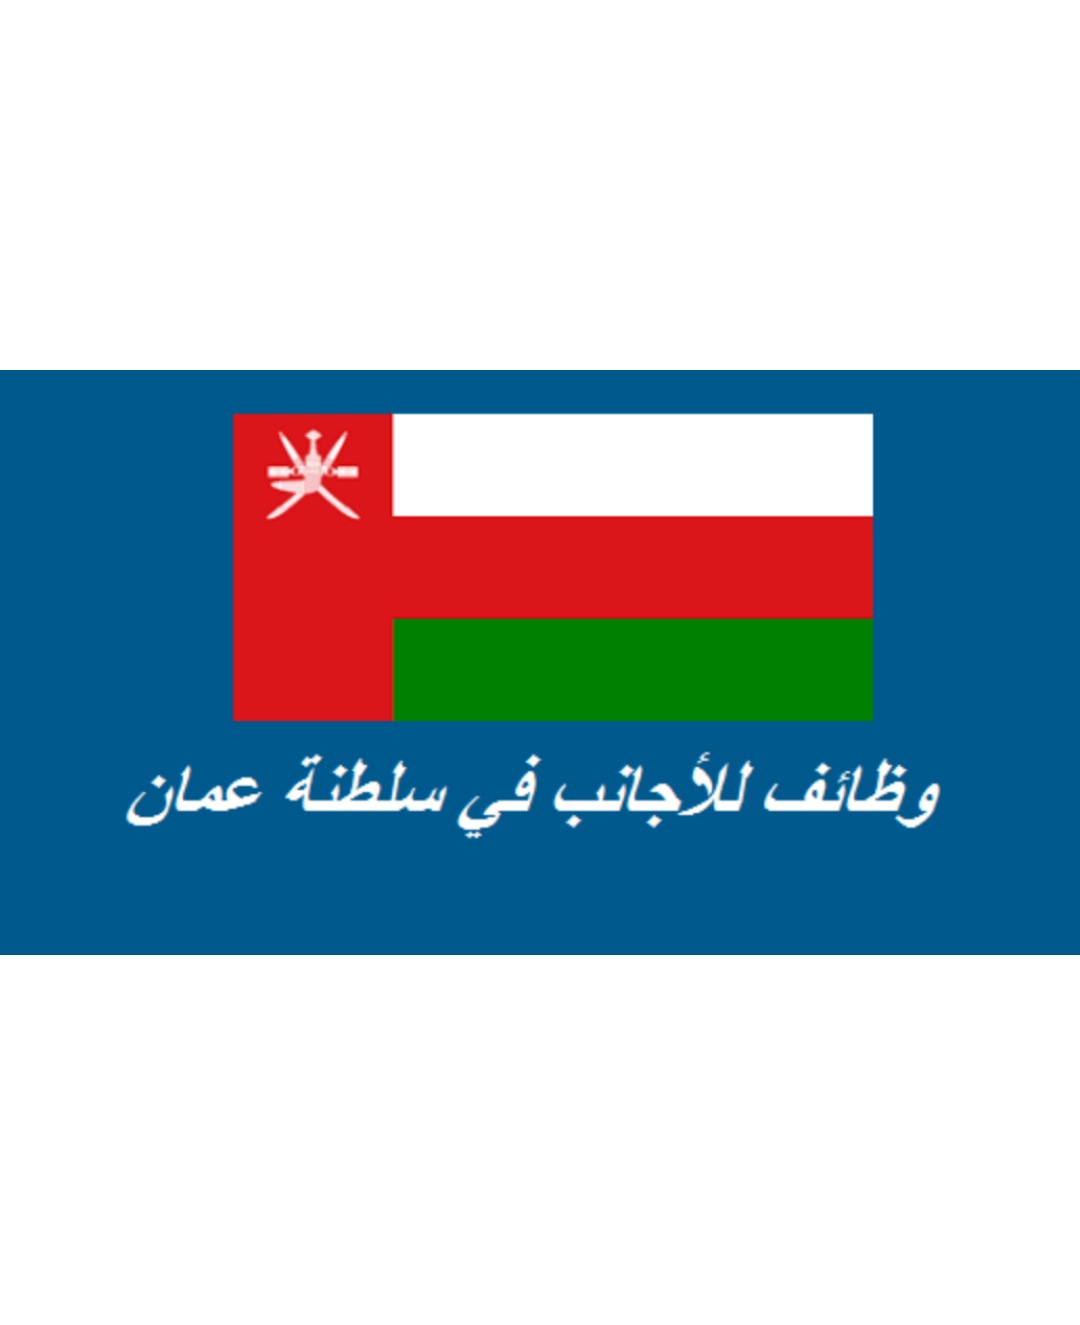 وظائف للأجانب في سلطنة عمان لعام 2022 .. تحديث يومي